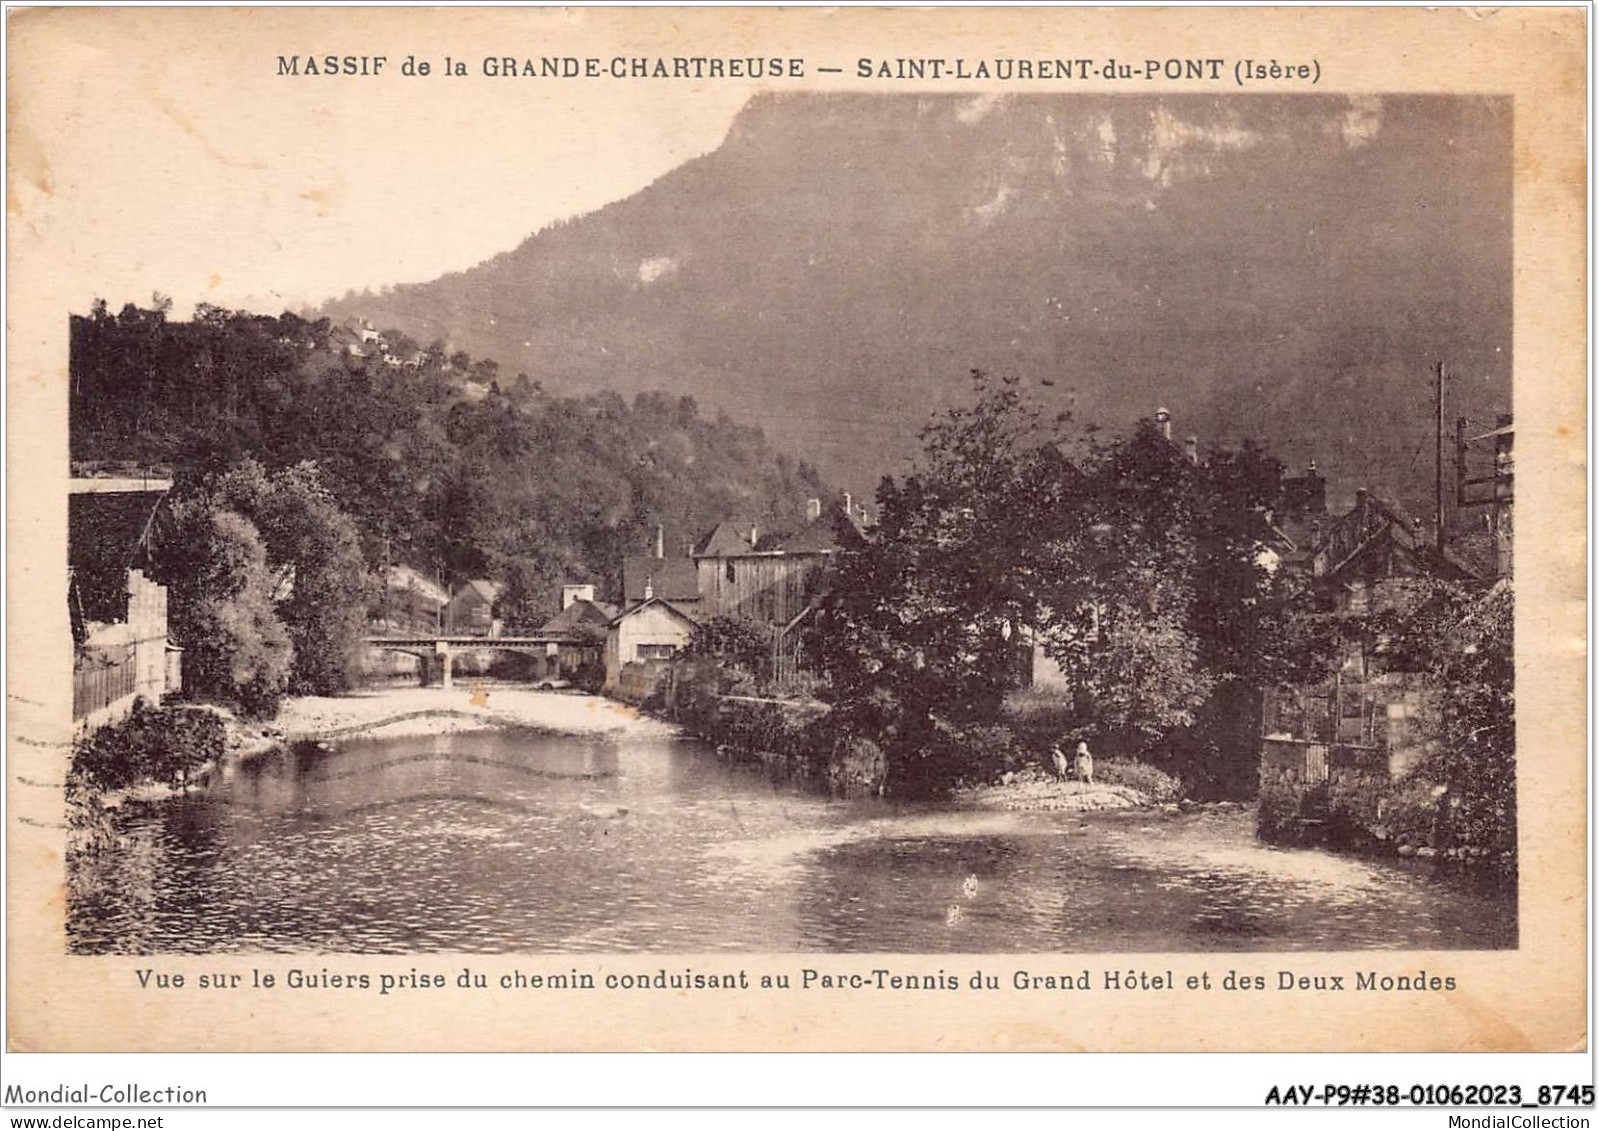 AAYP9-38-0831 - Massif De La GRANDE-CHARTREUSE - Aint-Laurent-Du-Pont - Saint-Laurent-du-Pont